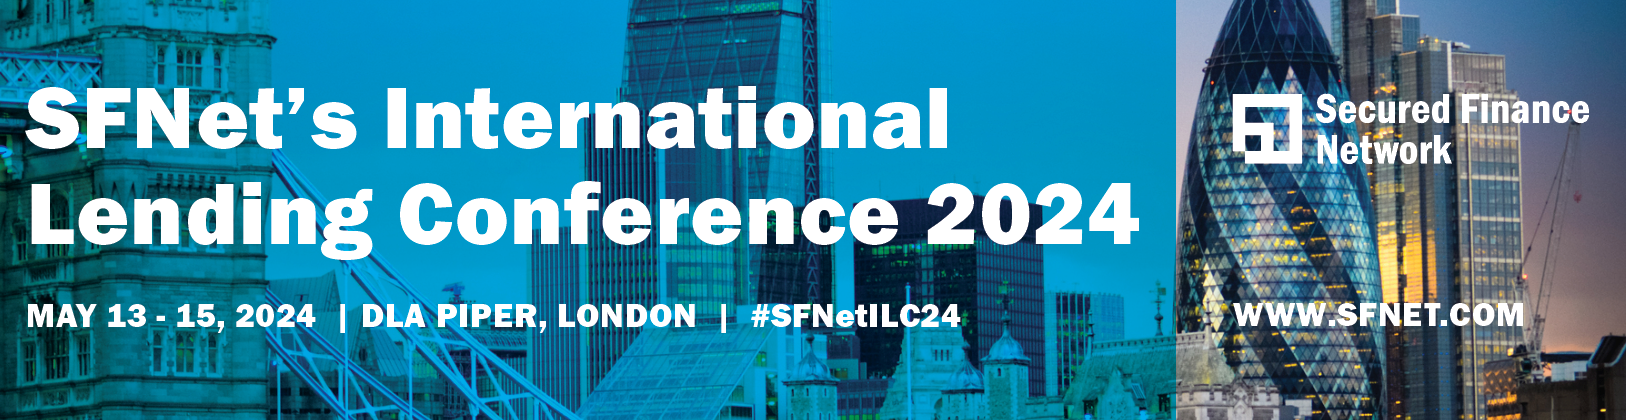 SFNet's International Lending Conference logo